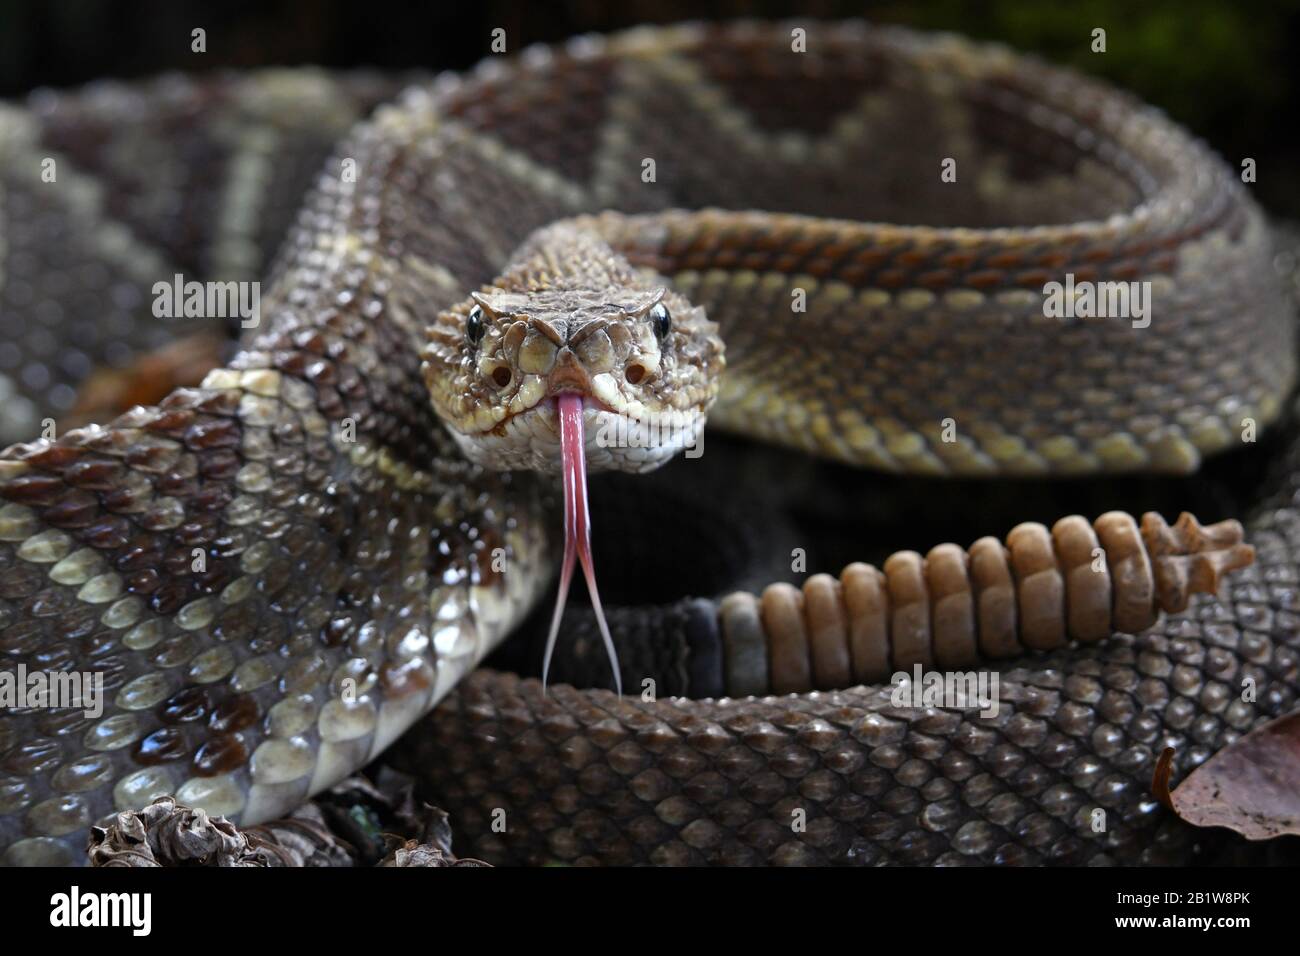 Rattlesnake tongue Stock Photo